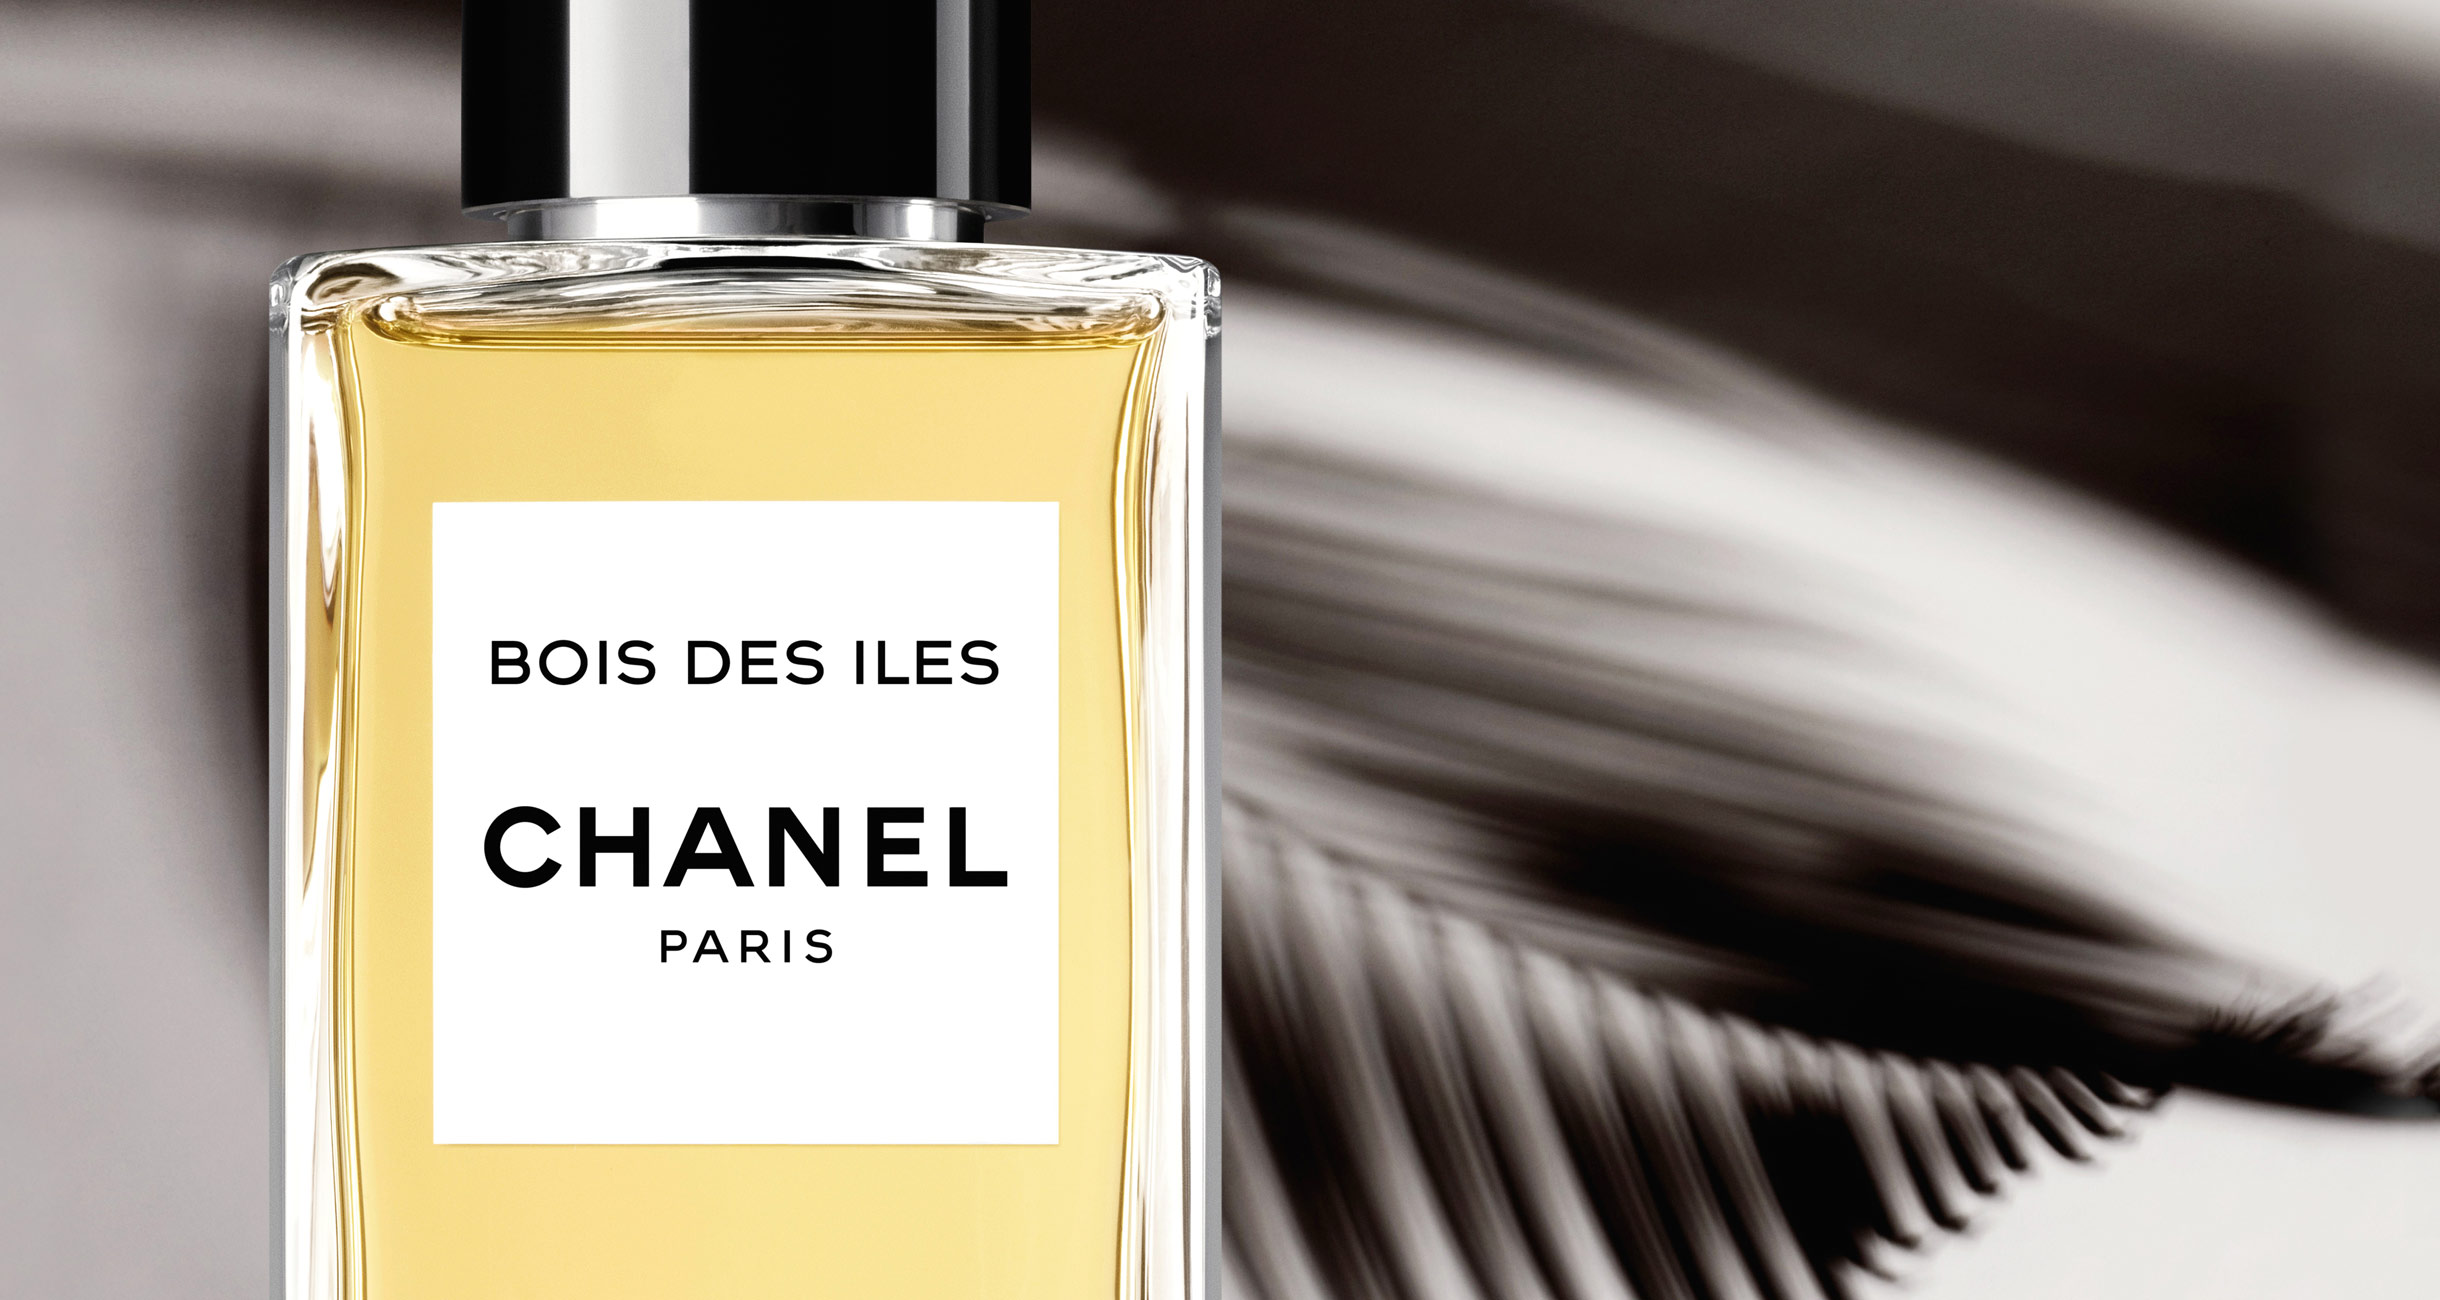 Подделка духов «Шанель»: как отличить оригинальный парфюм